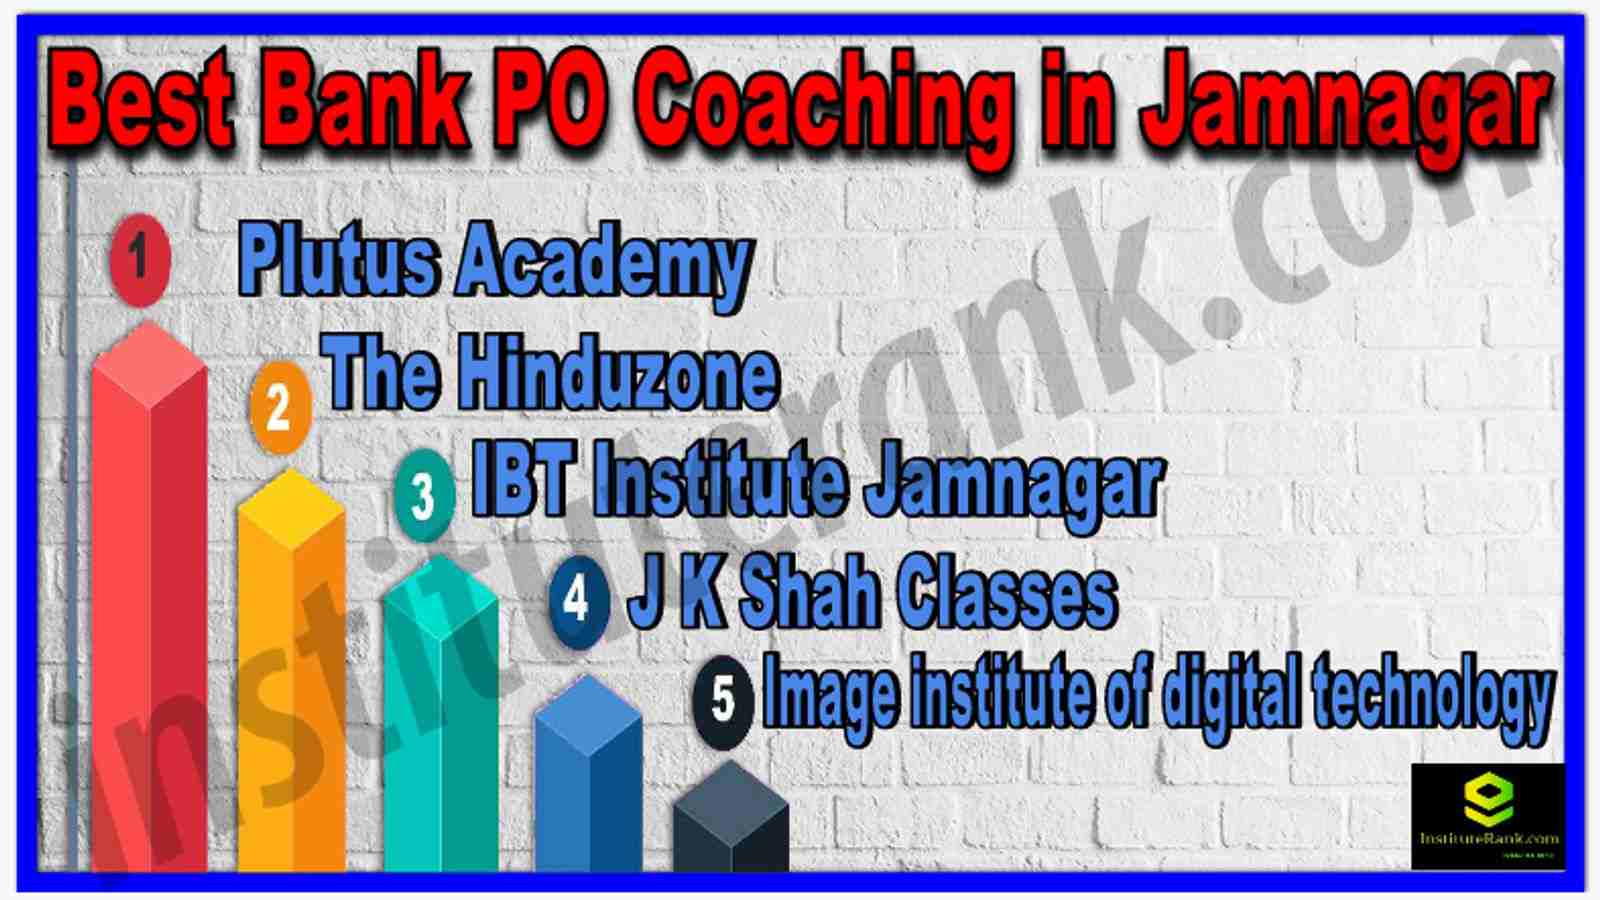 Best Bank PO Coaching in Jamnagar